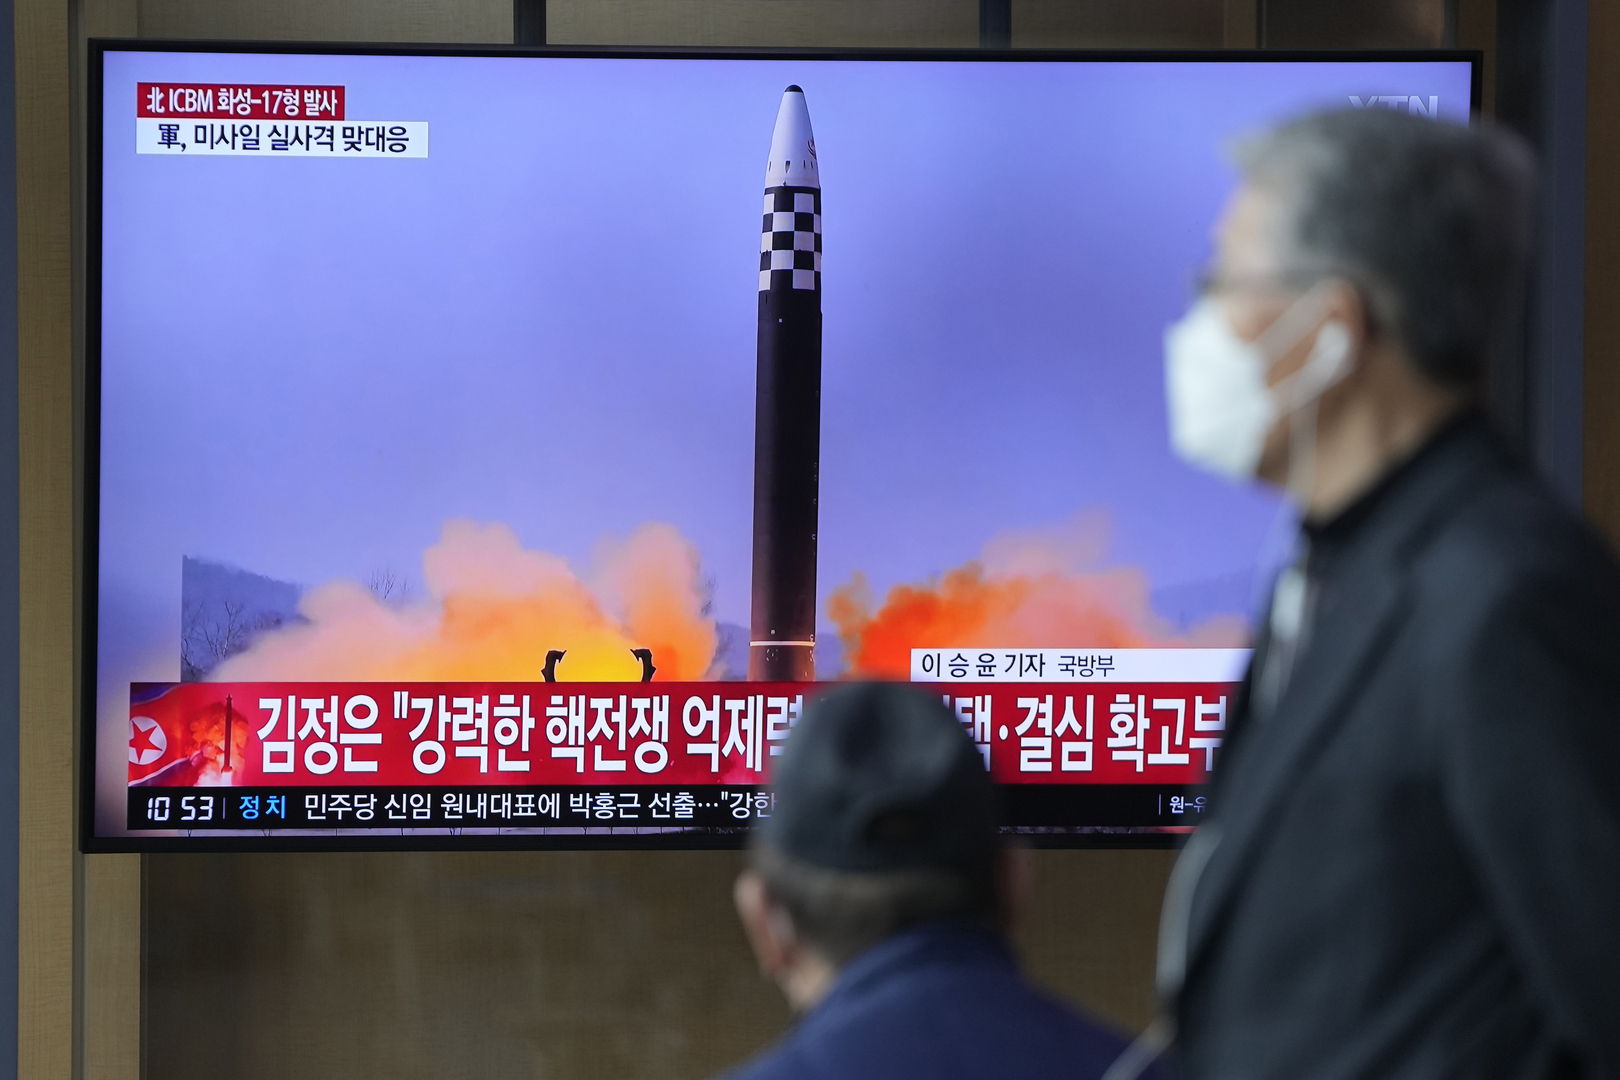 الجيش الكوري الجنوبي يكشف تفاصيل عن الصاروخ الذي أطلقته كوريا الشمالية